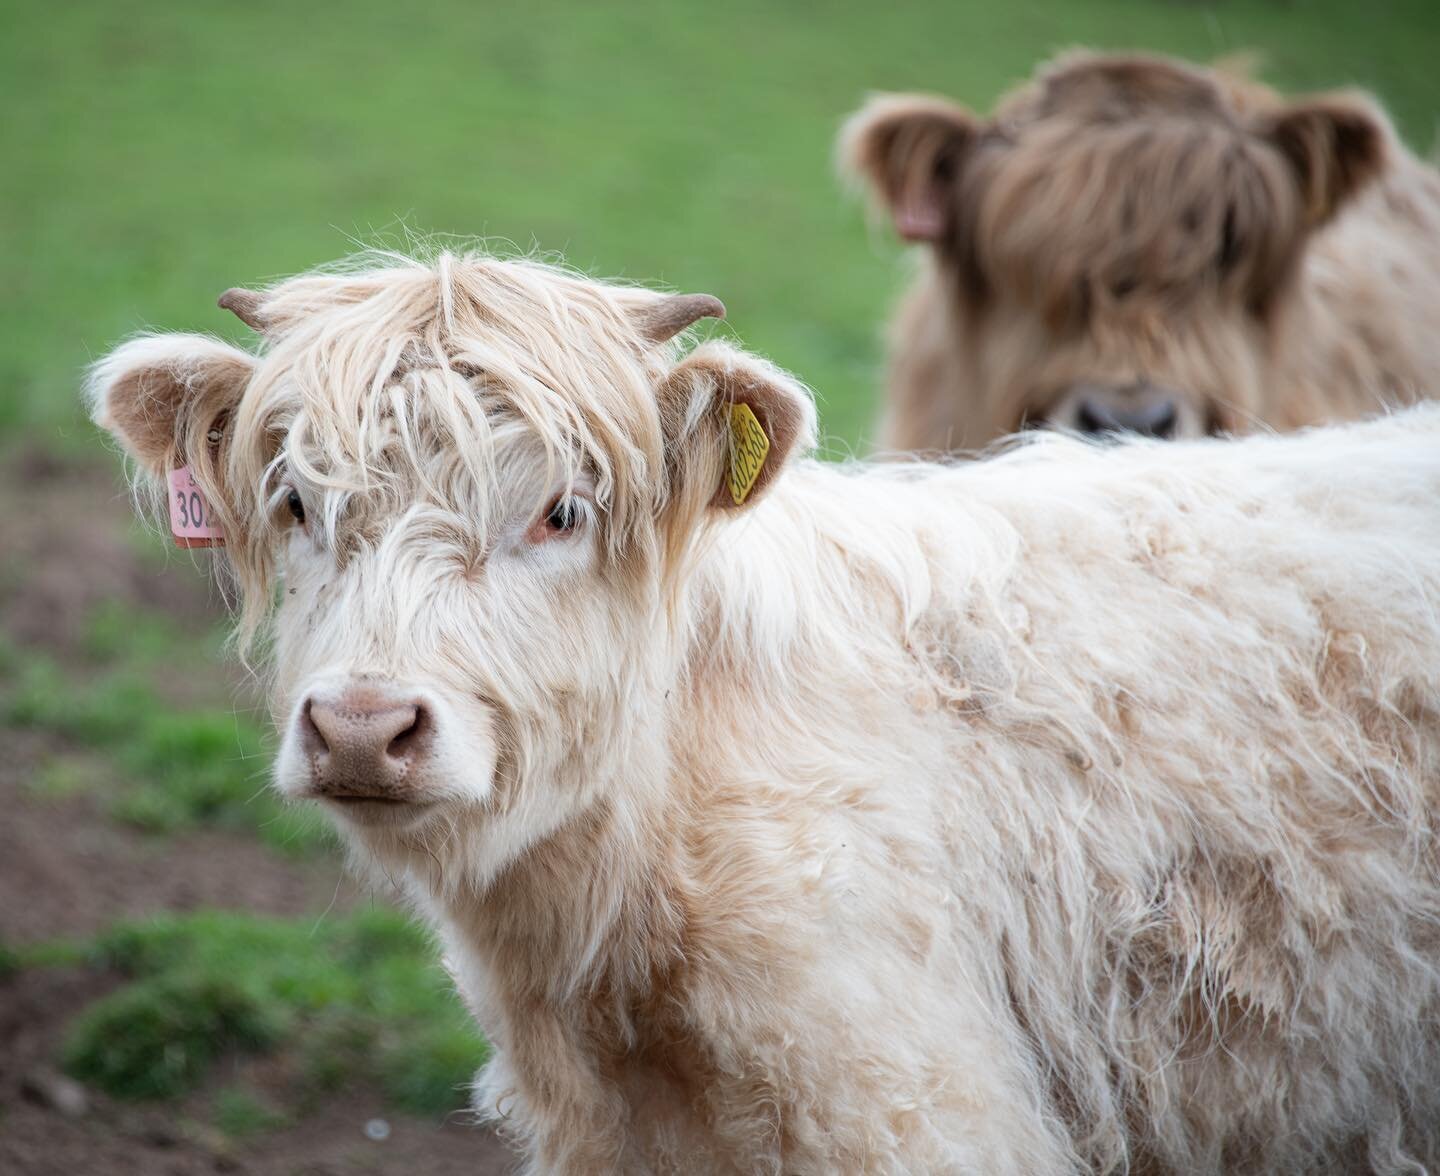 Some of our posers 📸
&bull;
&bull;
&bull;
&bull;
#highlandcow #highlandcows #highlandcattle  #highlander #shorthorn #calf #calvingseason #calving #cow #cows #cattle #cowsofinstagram #scottishcattle #farm #familyfarm #familyfarming #farming #farmingl